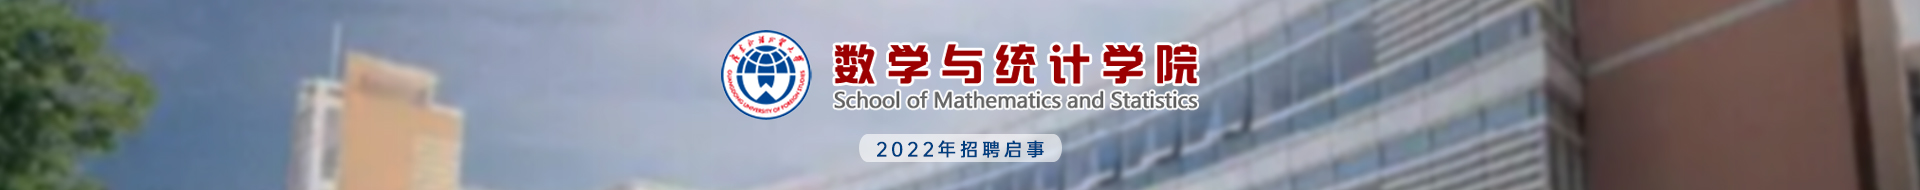 广东外语外贸大学数学与统计学院